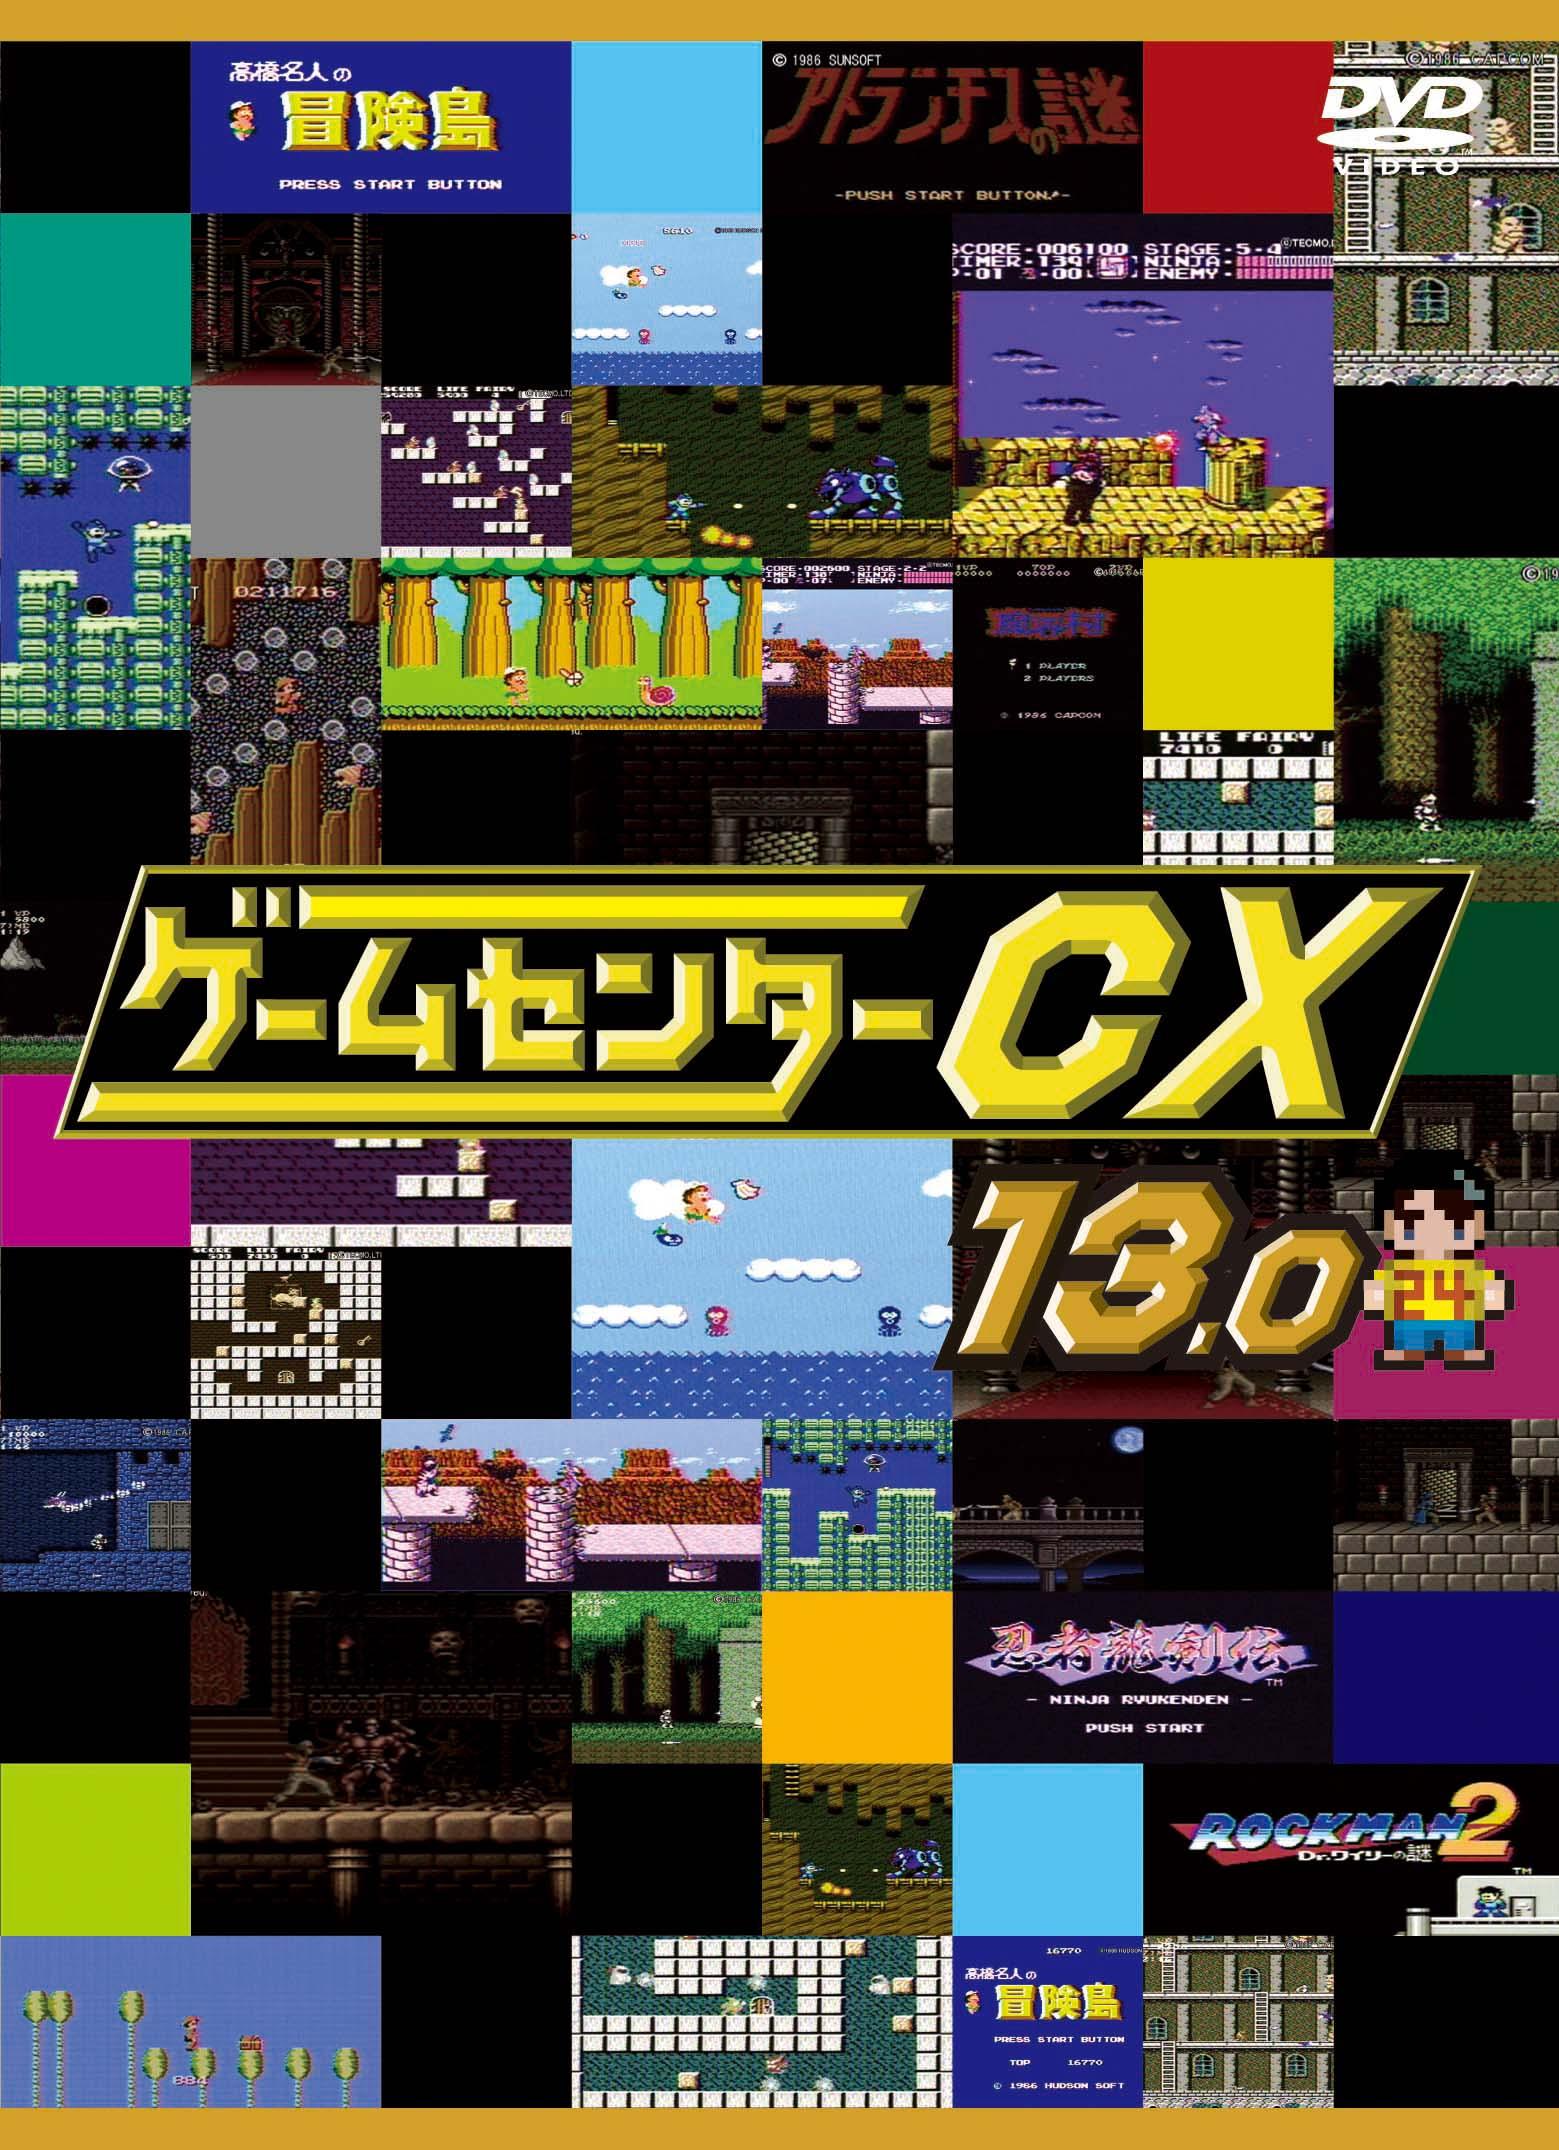 ゲームセンターcx DVD-BOX 13本まとめ売り - ブルーレイ